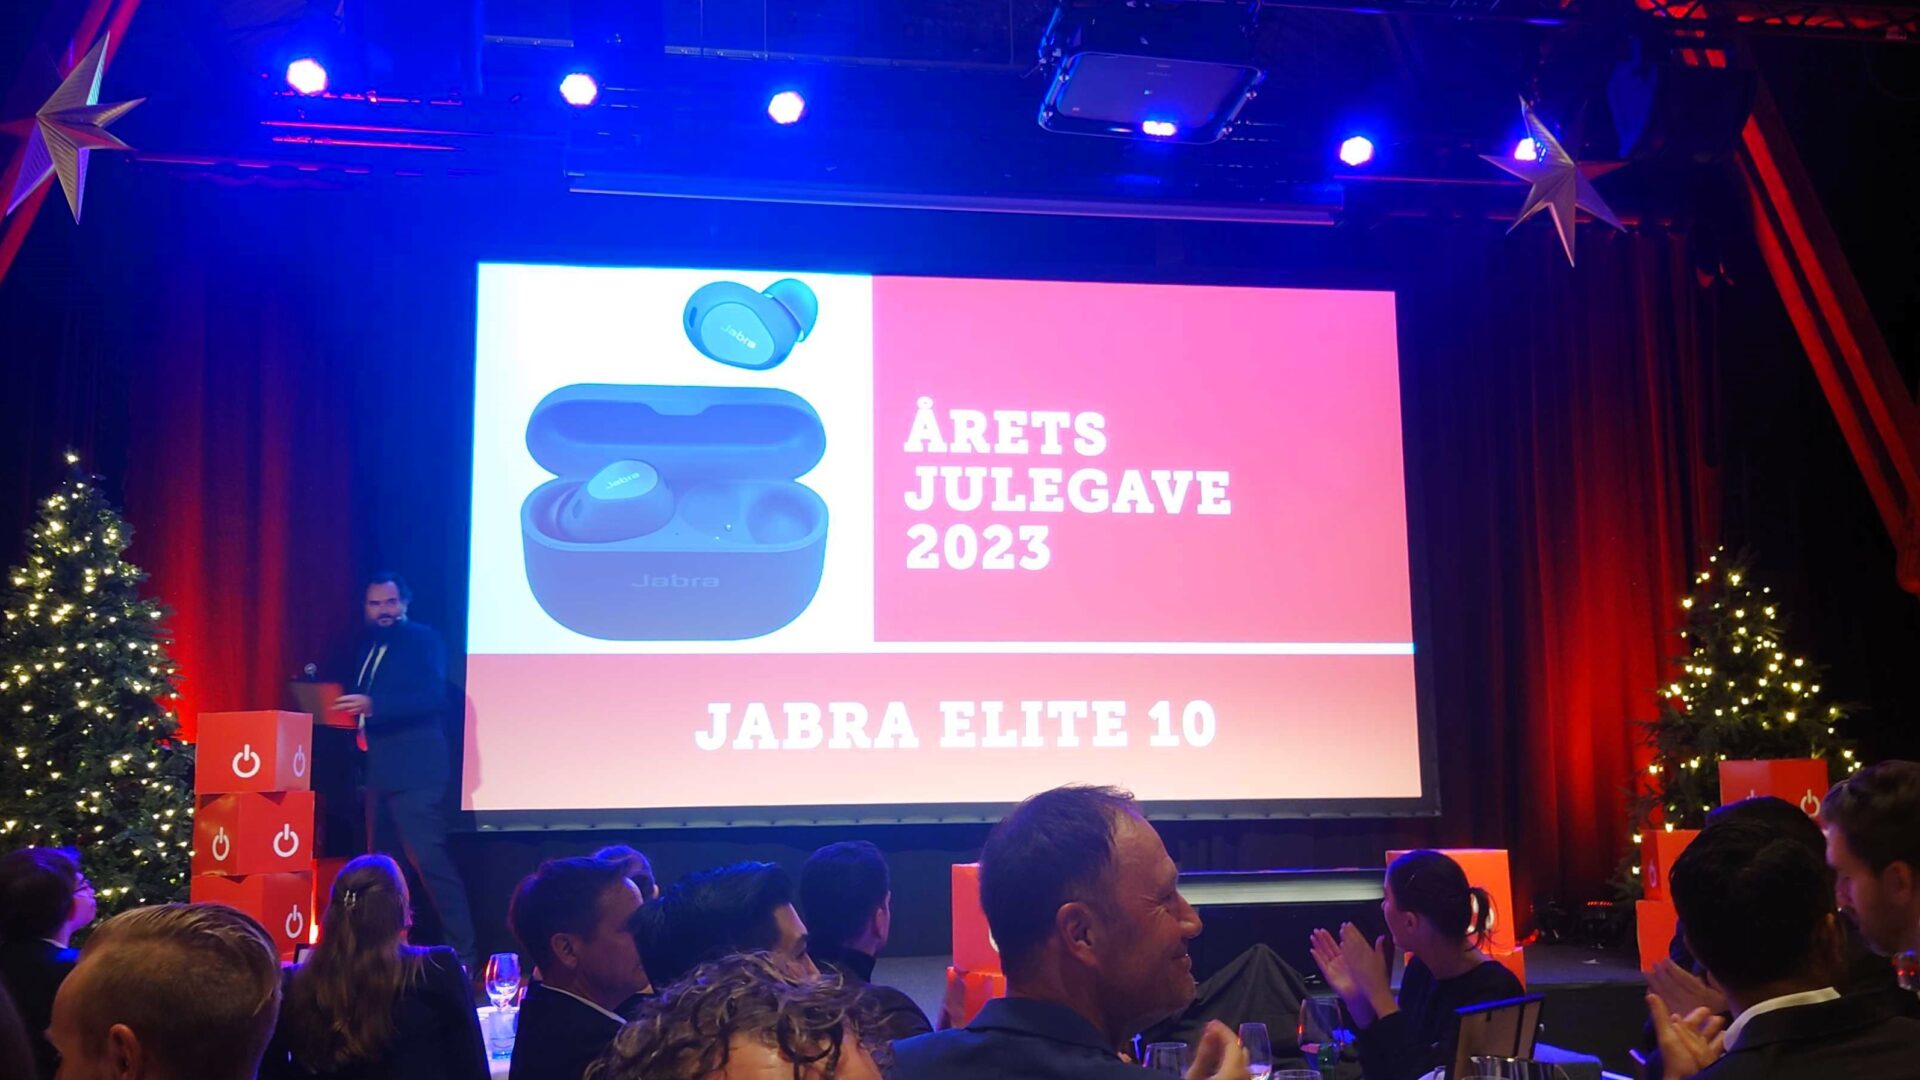 Jabra Elite 10 kåret til Årets julegave